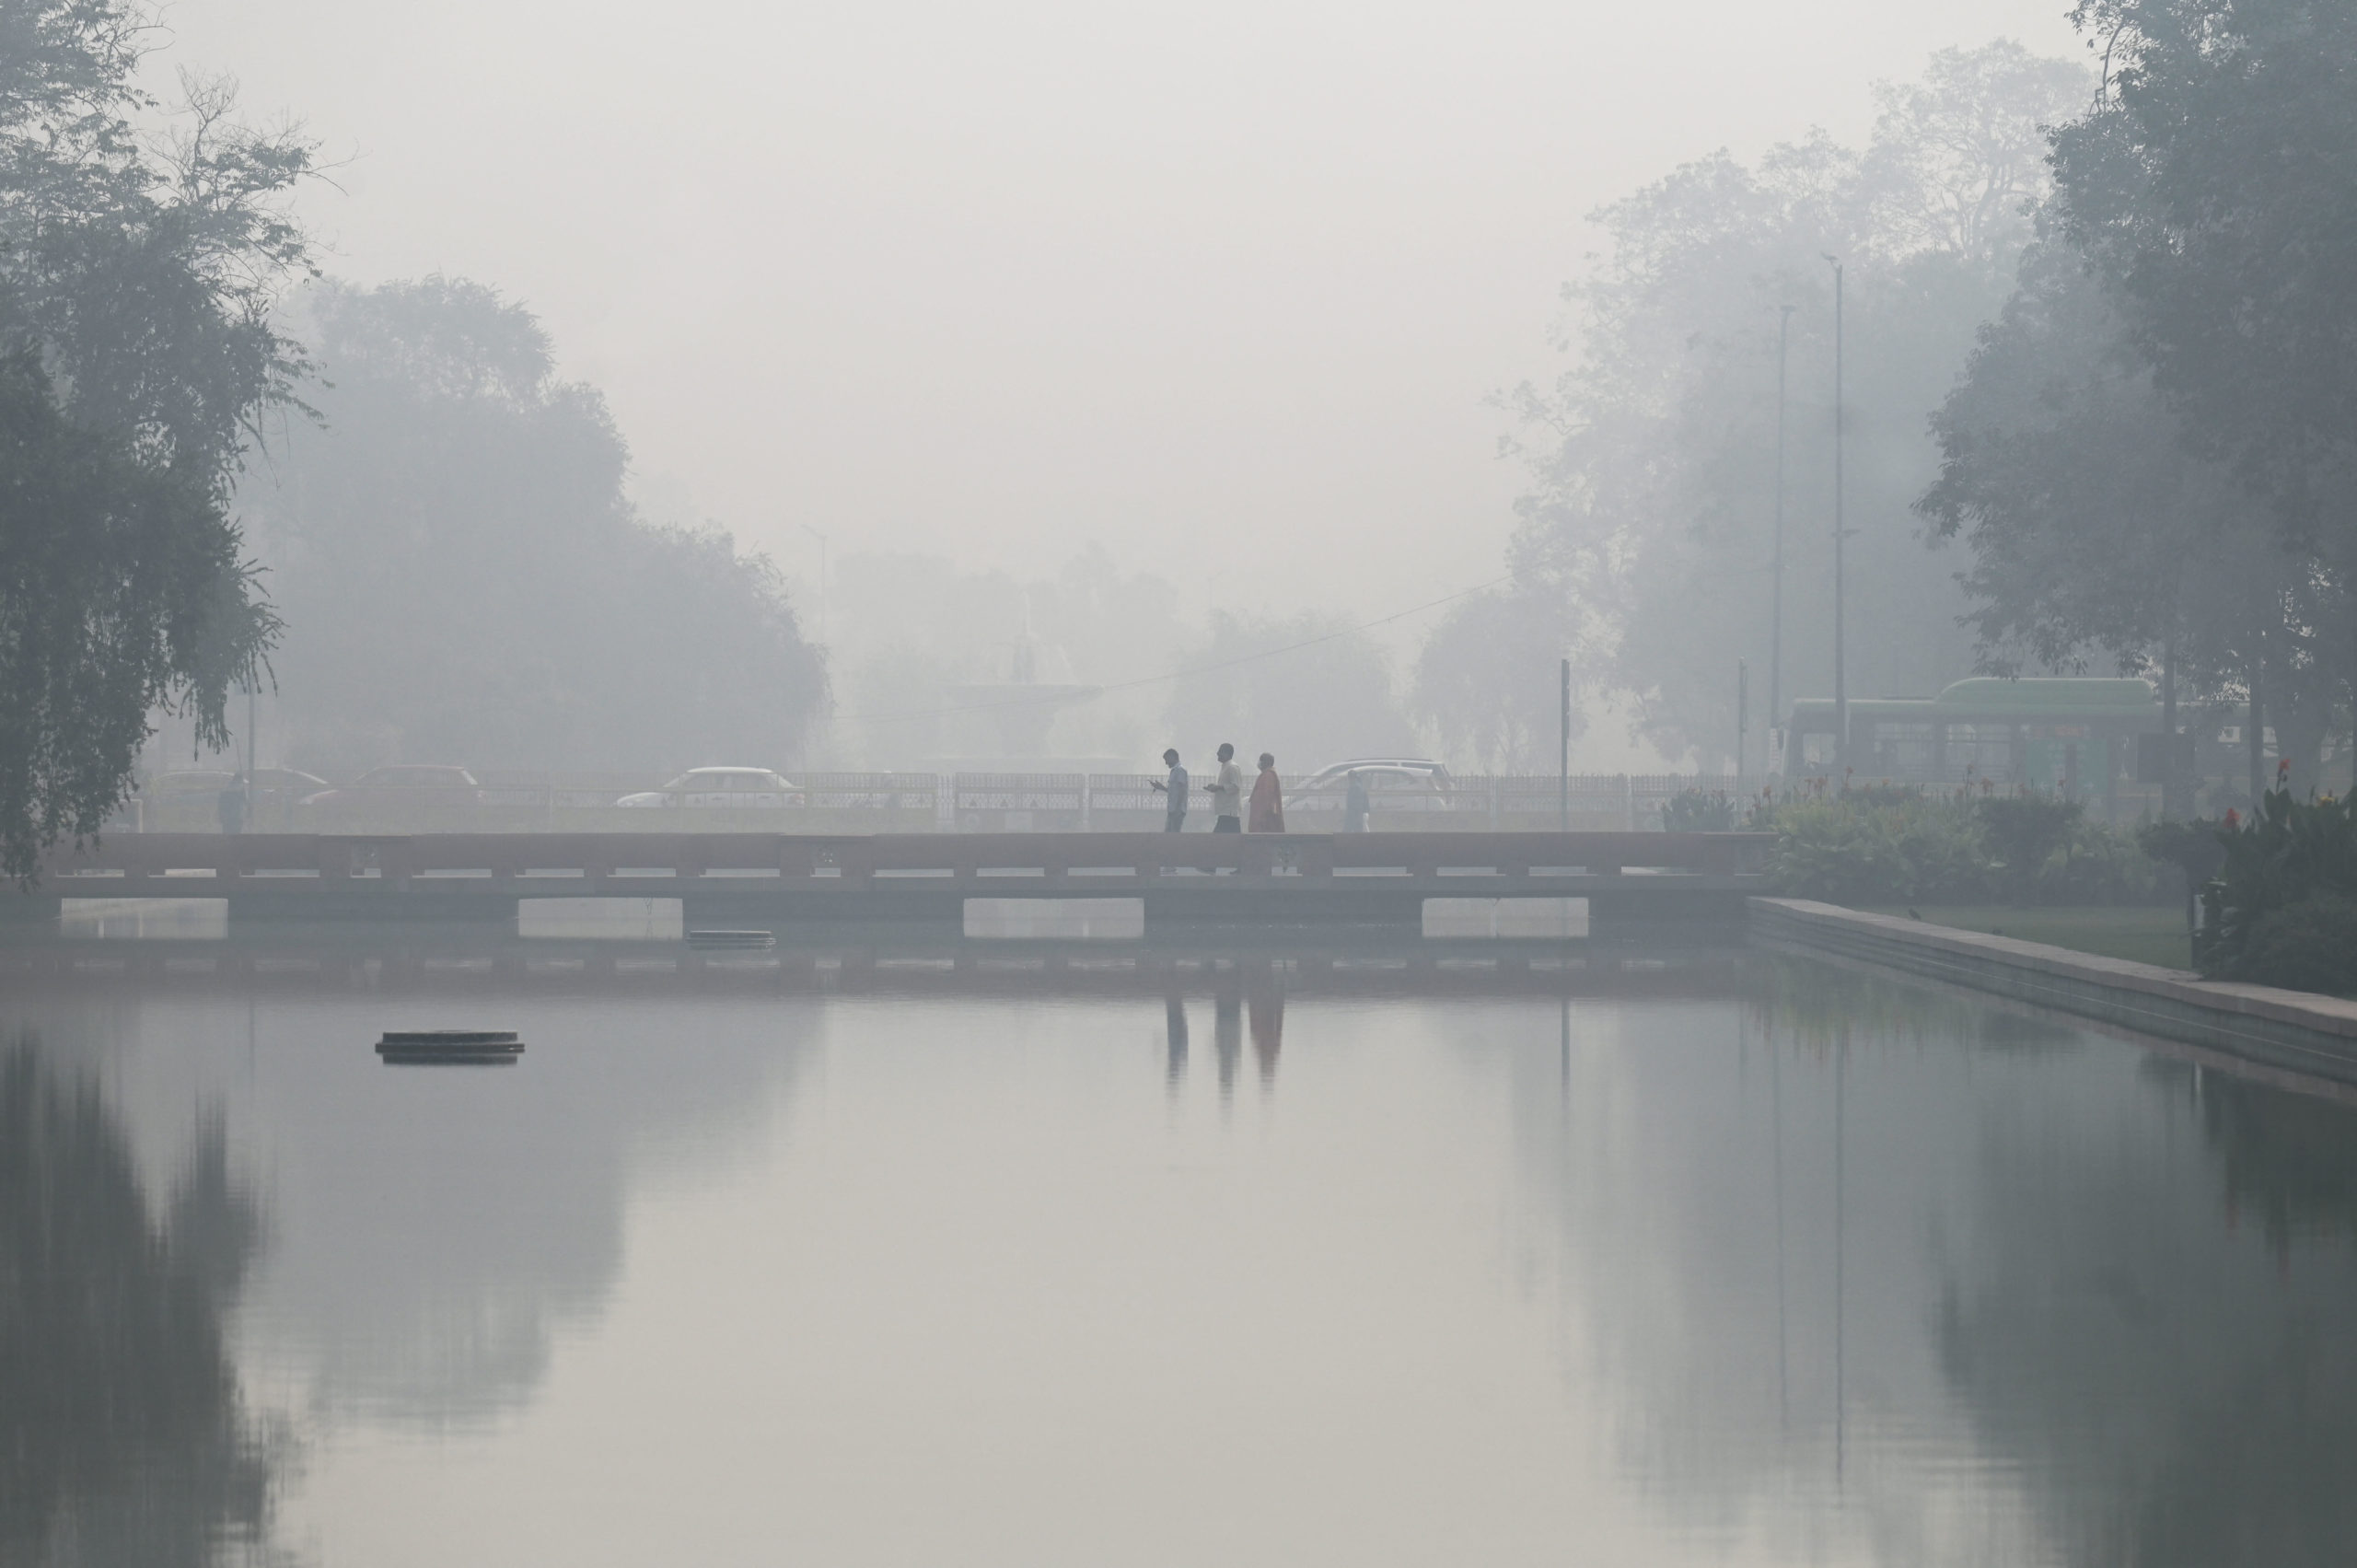 Ινδία: Επικίνδυνα επίπεδα ατμοσφαιρικής ρύπανσης στο Νέο Δελχί – Αιτήματα να κλείσουν τα σχολεία